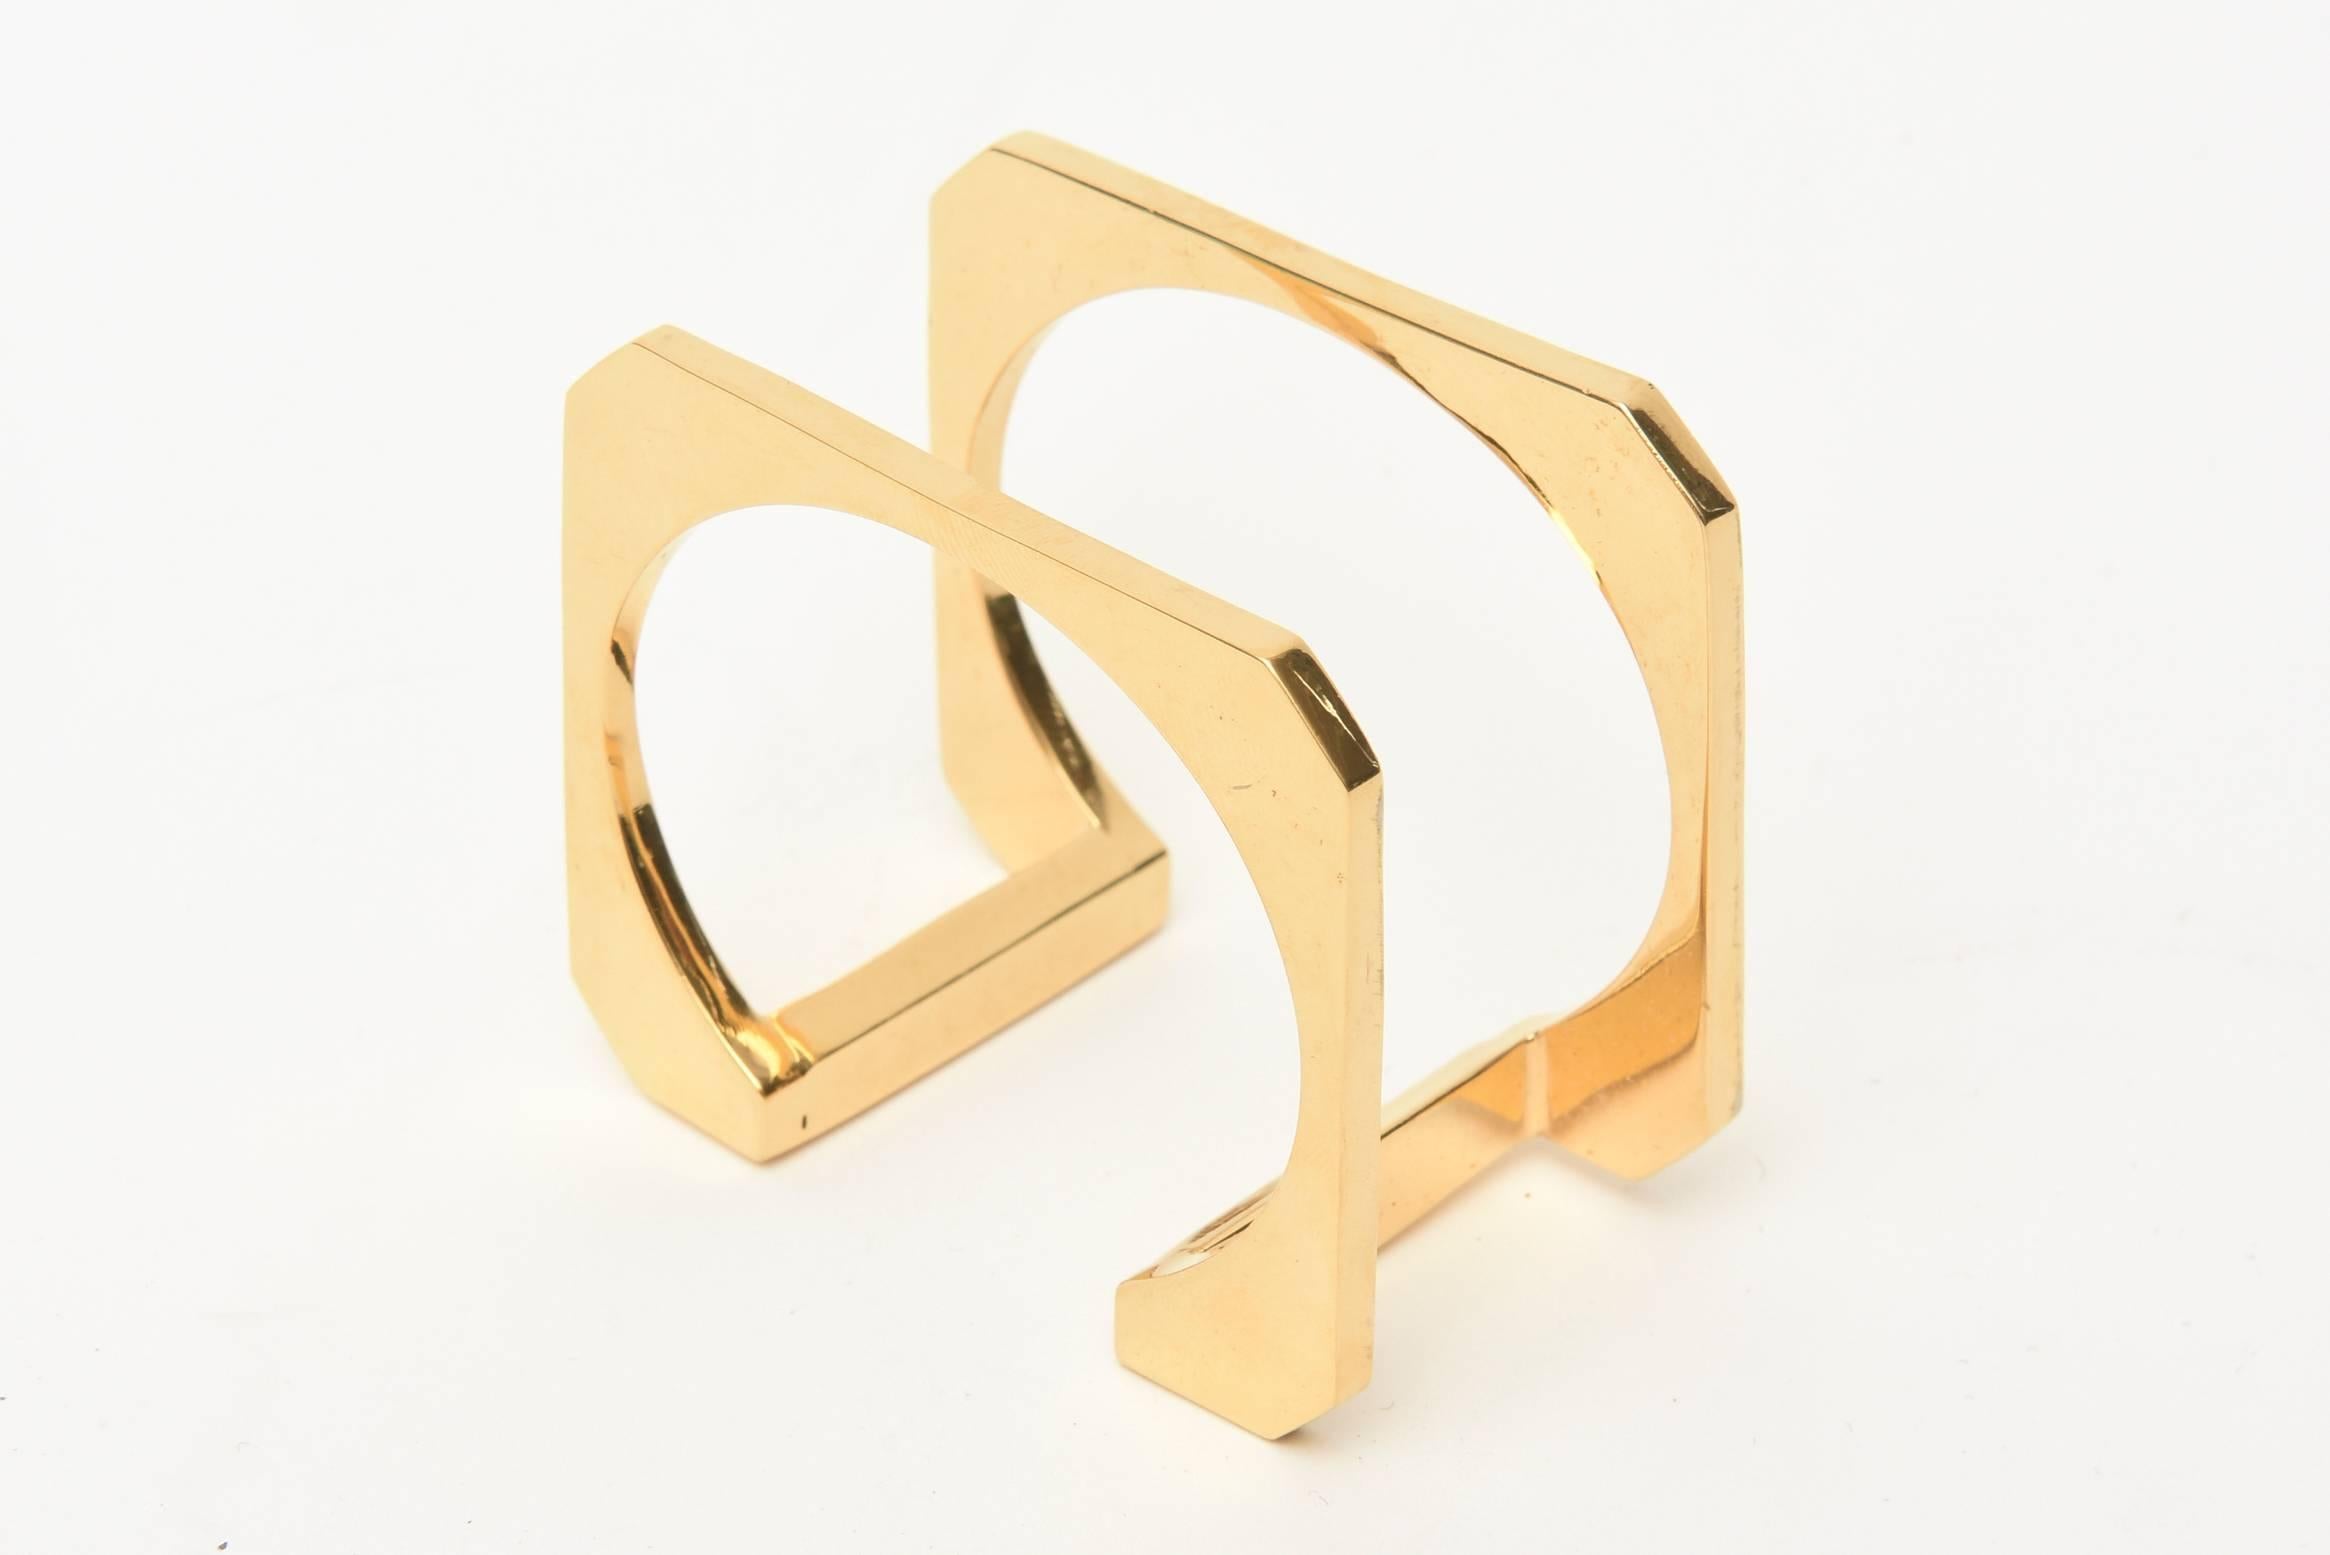 Dieses dynamische und skulpturale Manschettenarmband ist modernistisch und architektonisch zugleich. Er ist vergoldet und stammt aus den 80er Jahren. Auf dem Kopf stehend sieht sie wie ein umgekehrtes U aus. Sie passt sich dem Handgelenk an und ist